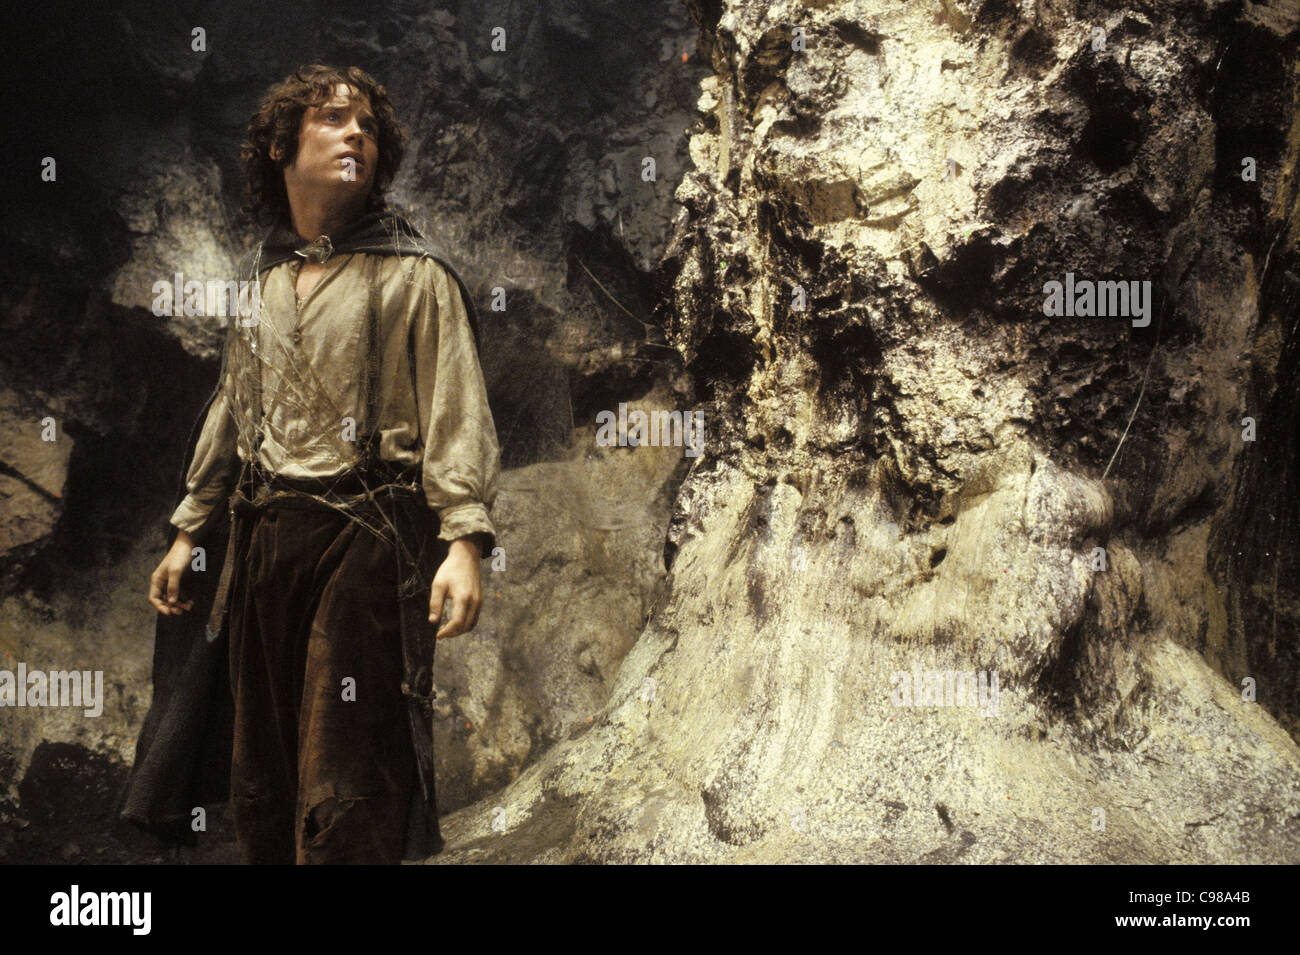 El Señor de los Anillos: El Retorno del Rey Año : 2003 USA Elijah Wood Director : Peter Jackson basada en la trilogía de Tolkien Foto de stock